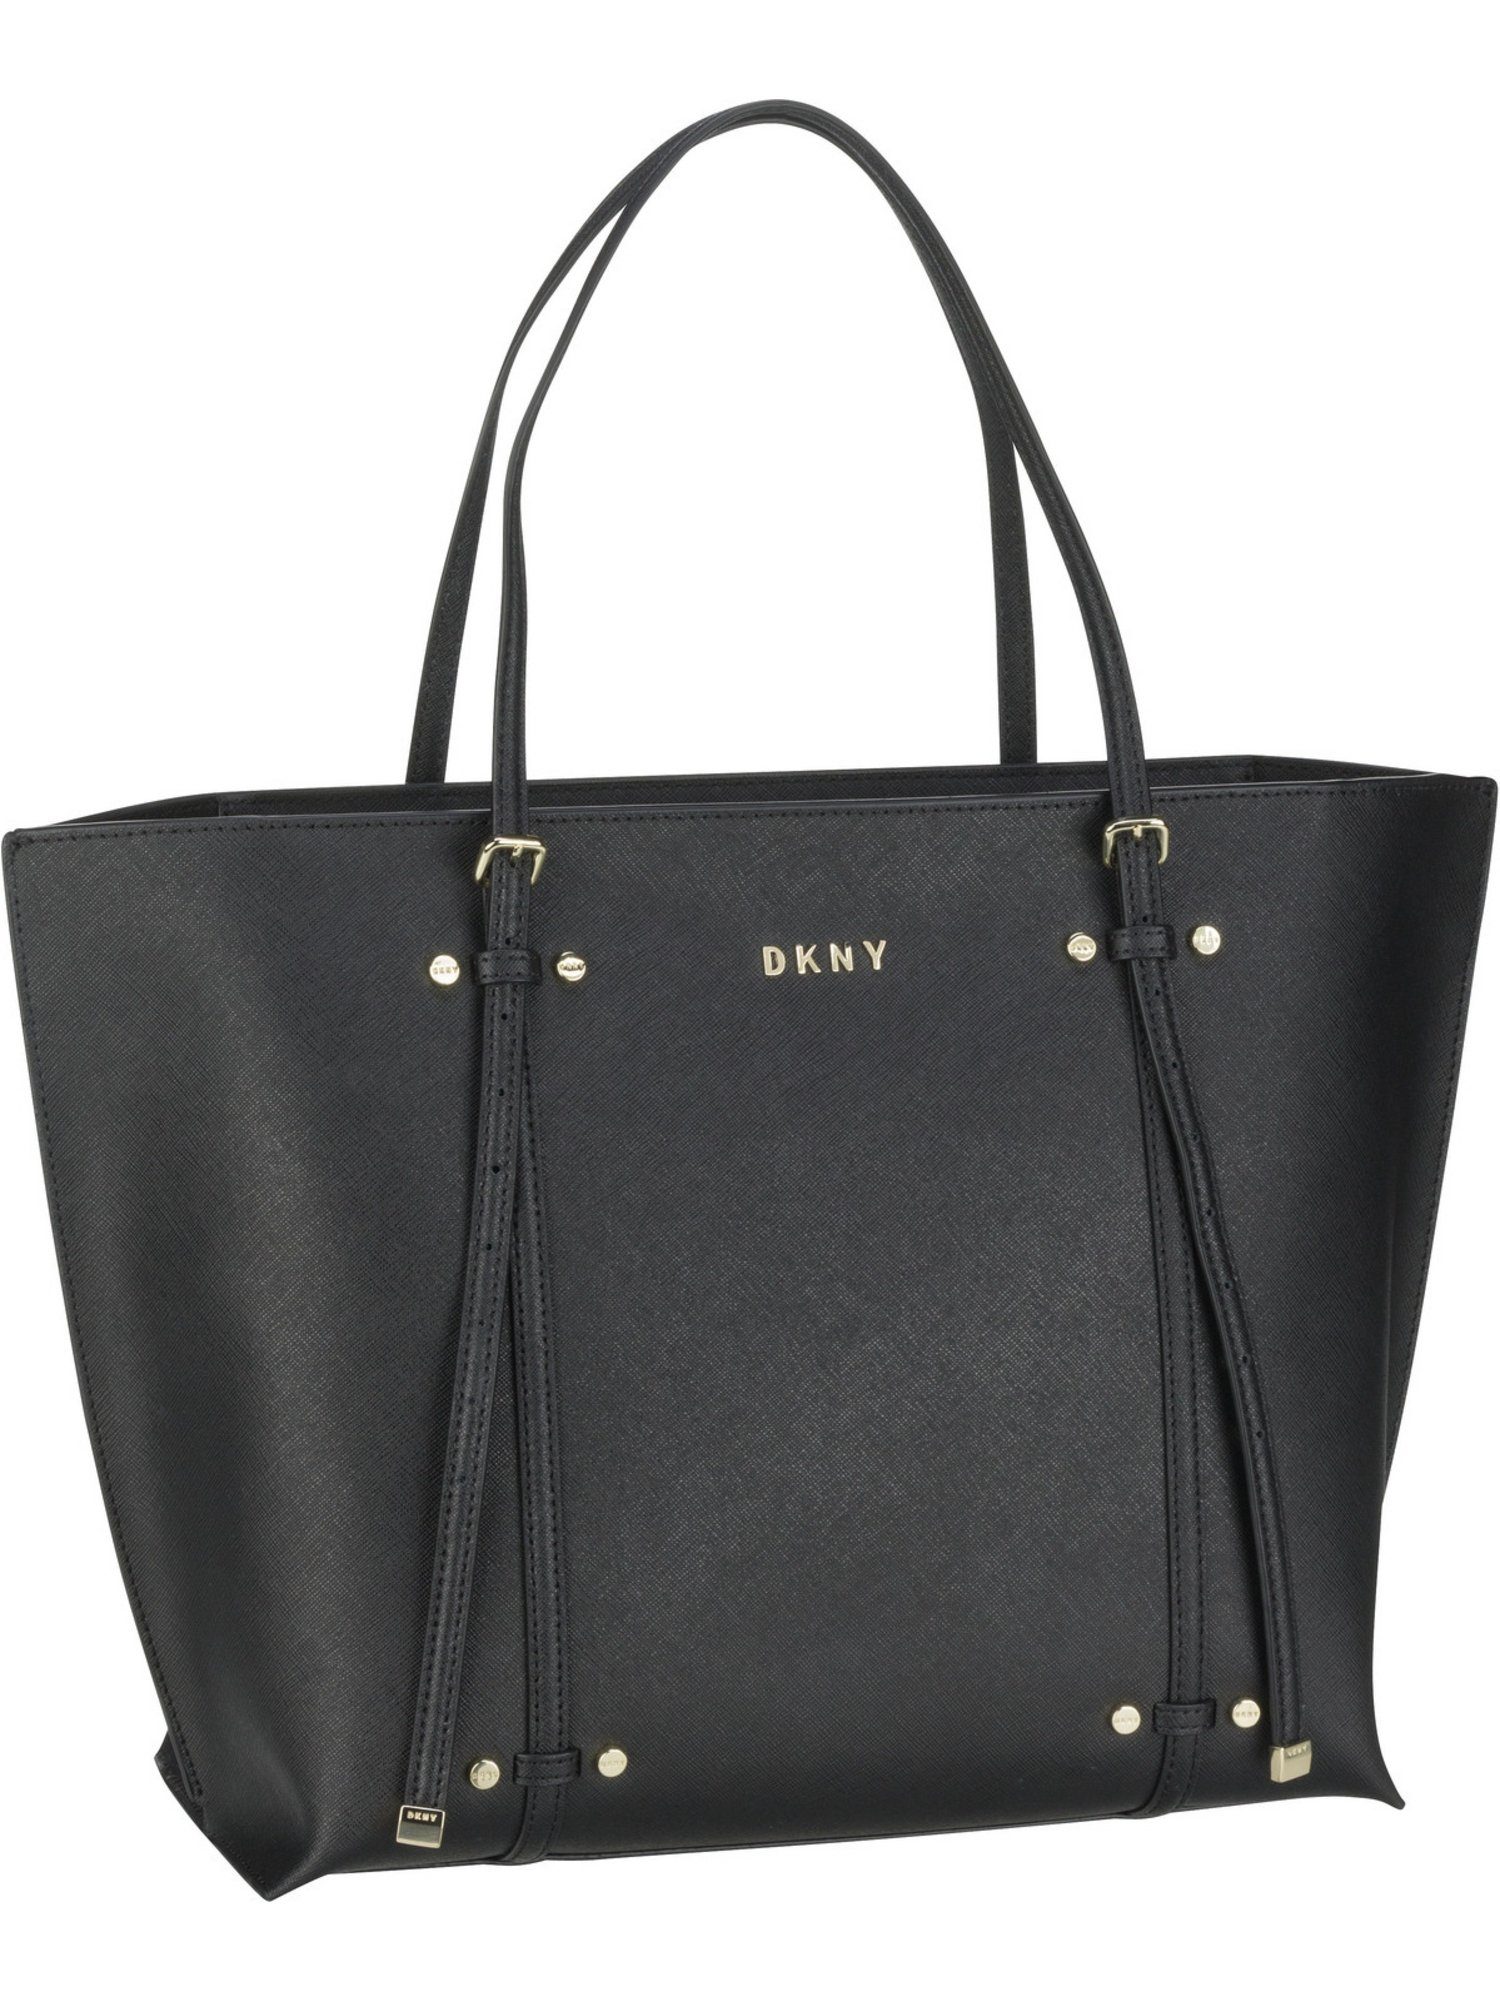 DKNY Handtasche »Bo Saffiano Tote«, Shopper kaufen | OTTO